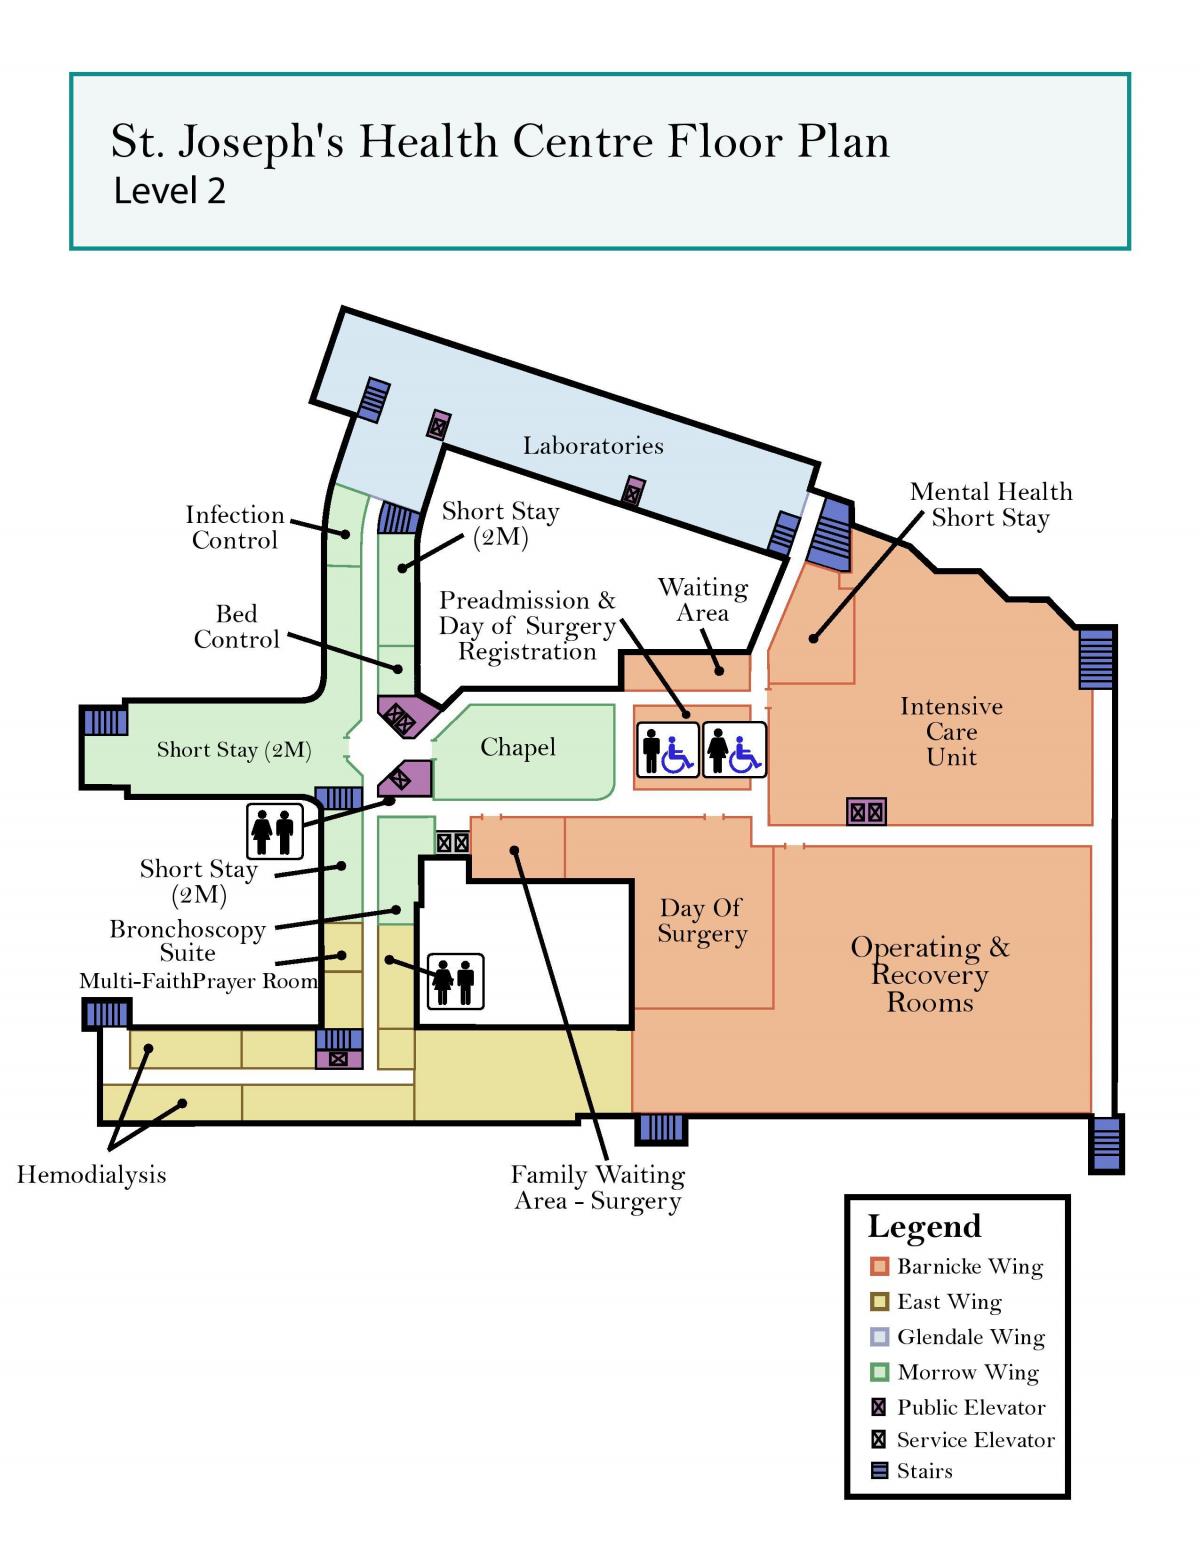 خريطة سانت جوزيف المركز الصحي تورونتو مستوى 2